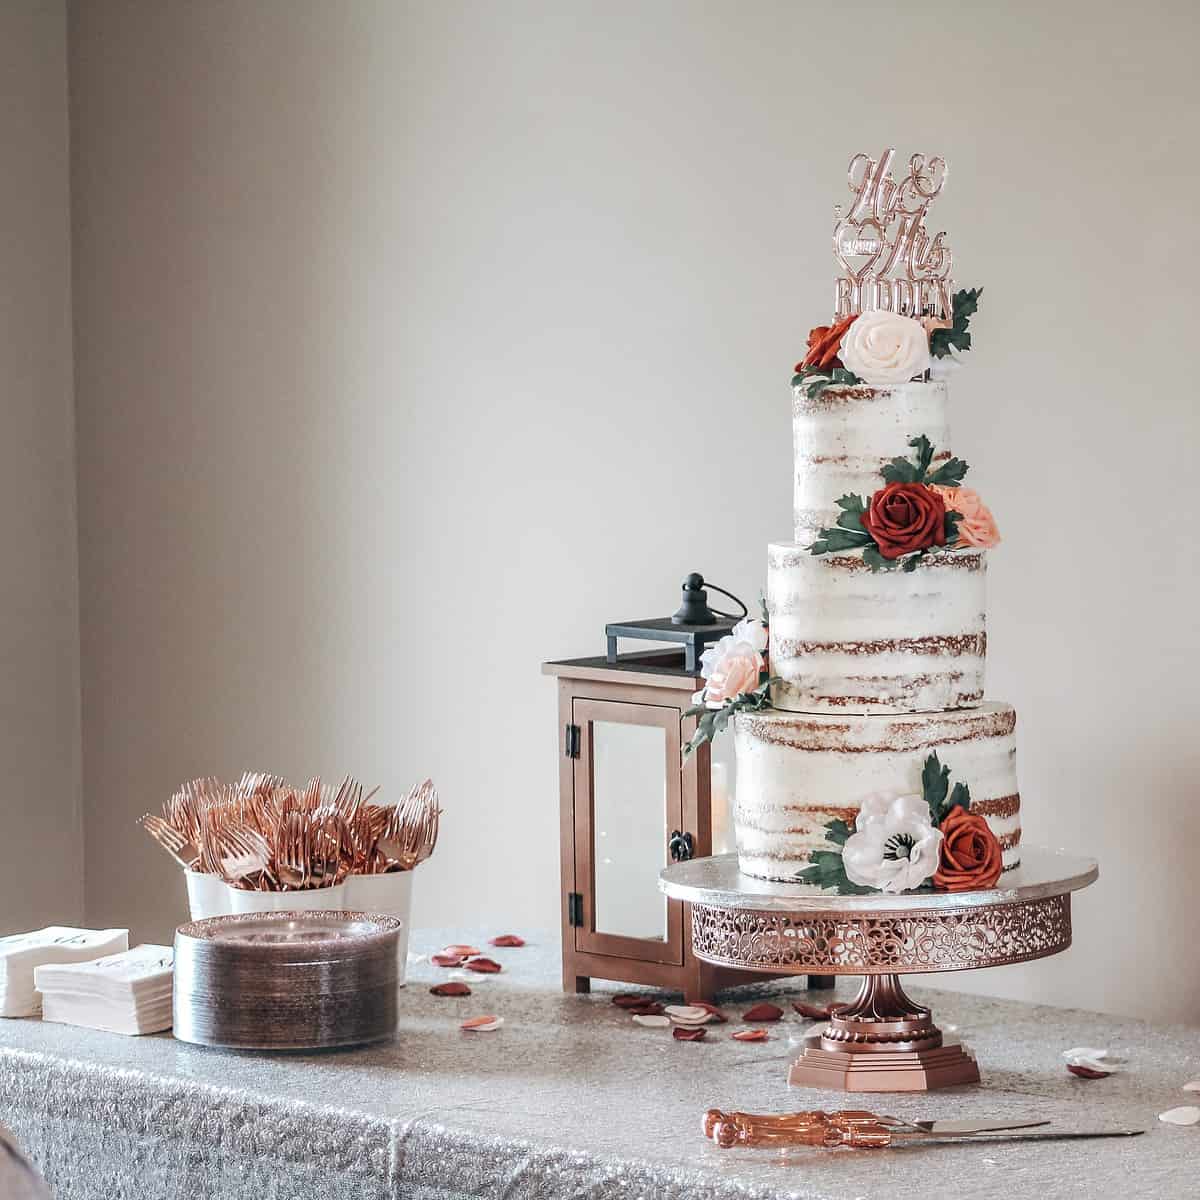 Bolo De Casamento: Como Escolher A Torta Ideal?